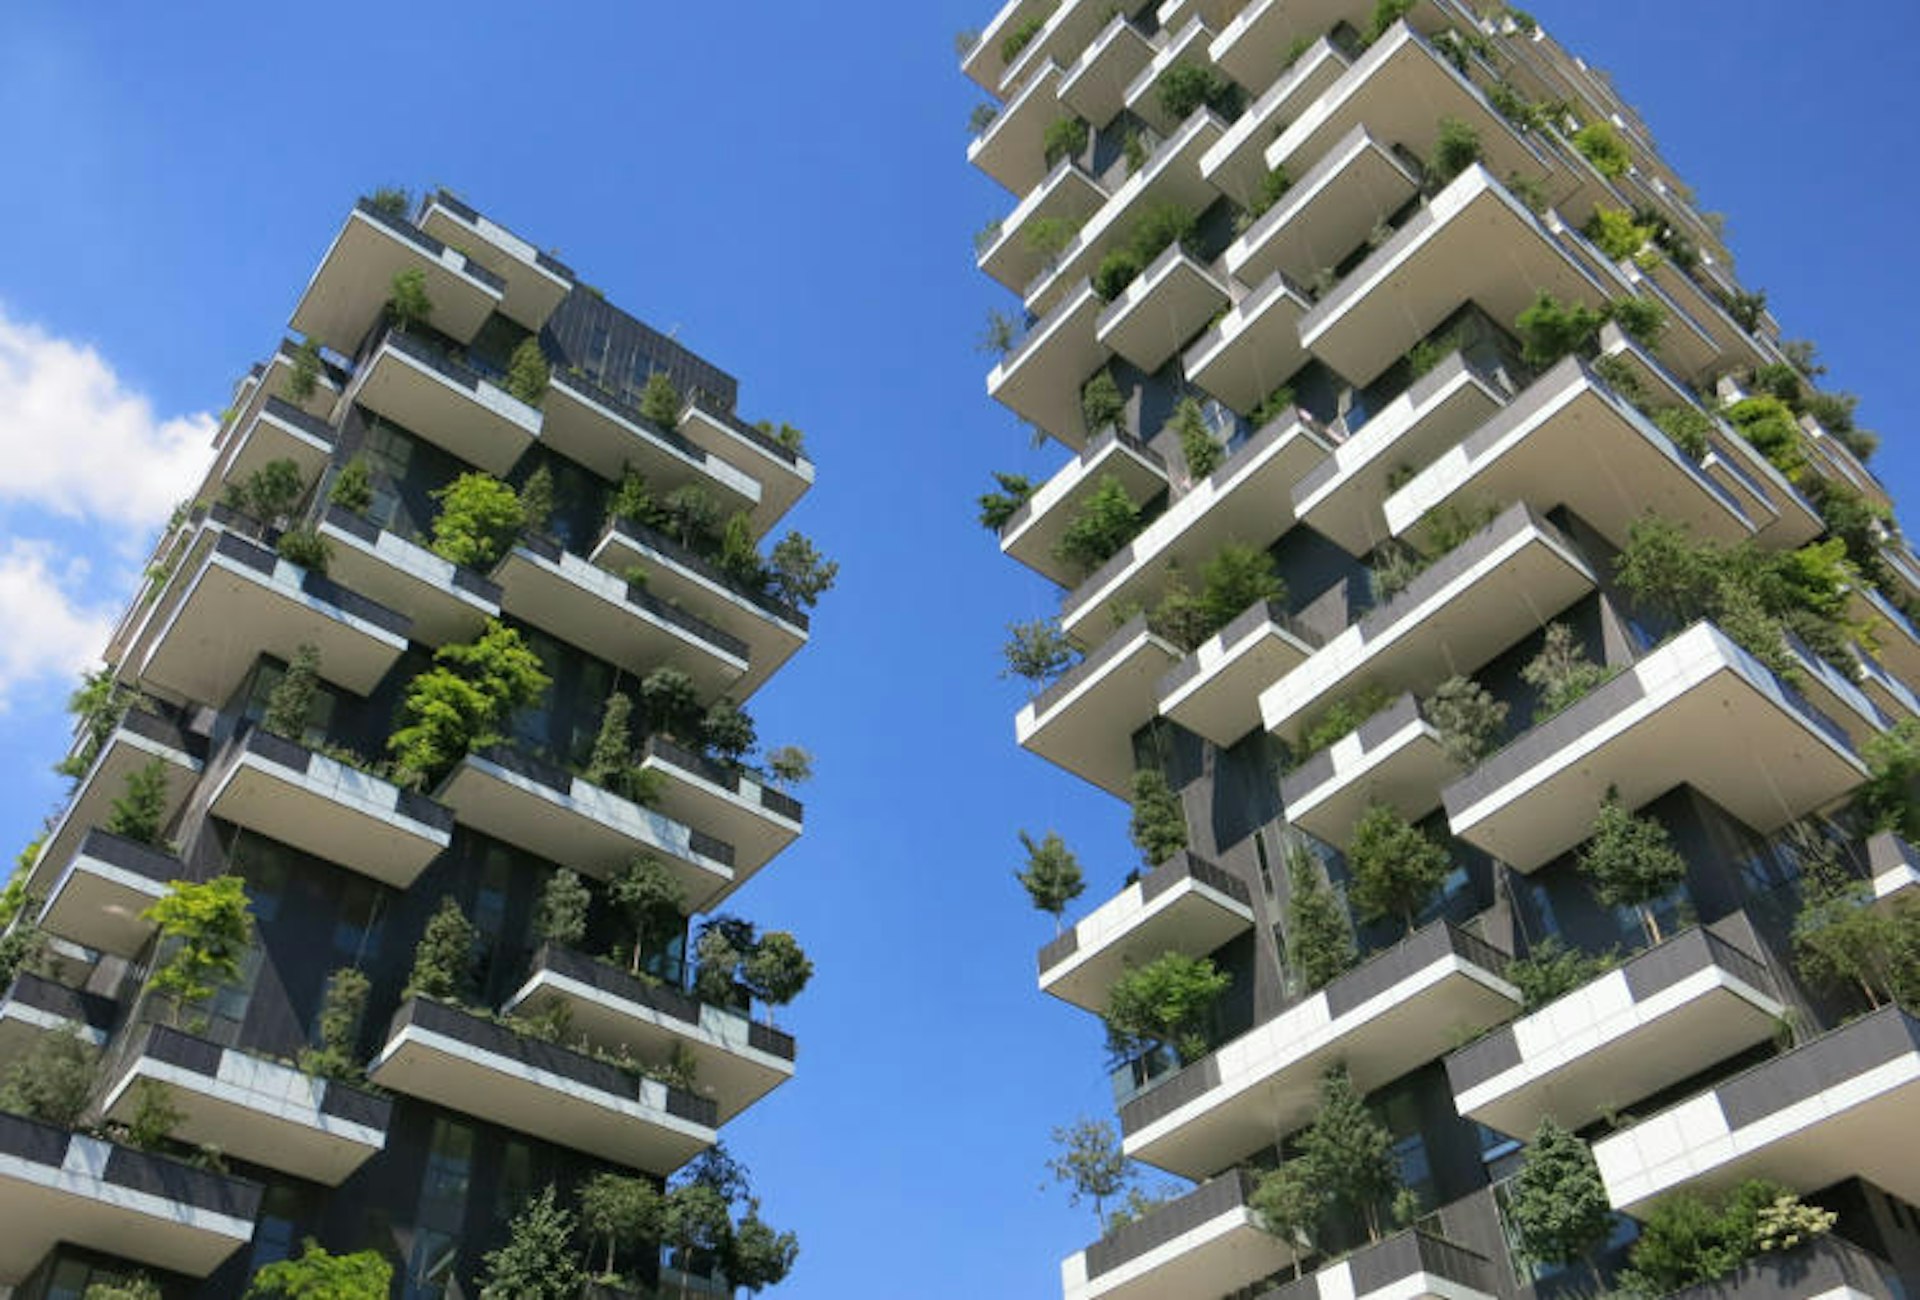 Stefano Boeri’s Vertical Garden residential high rises. 